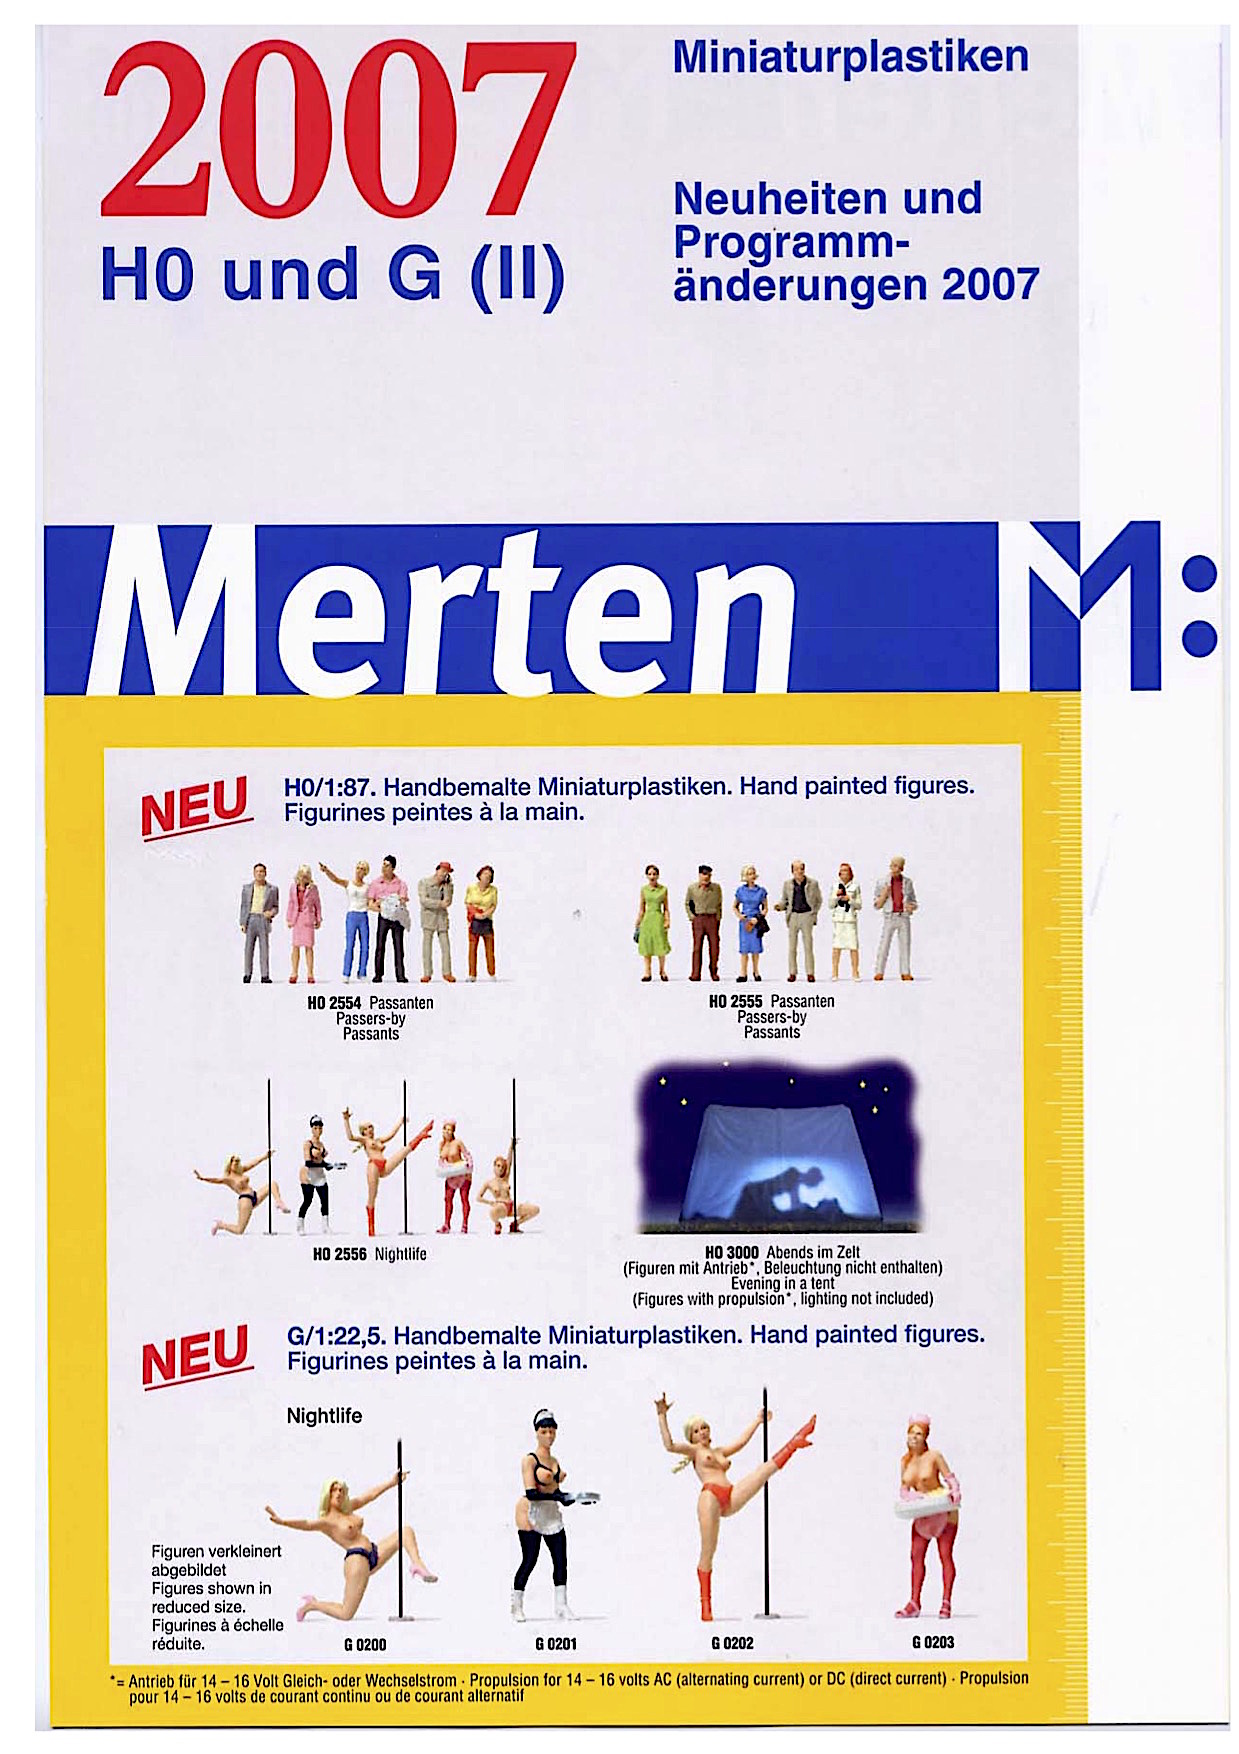 Merten Miniaturplastiken Neuheiten (New Items) 2007